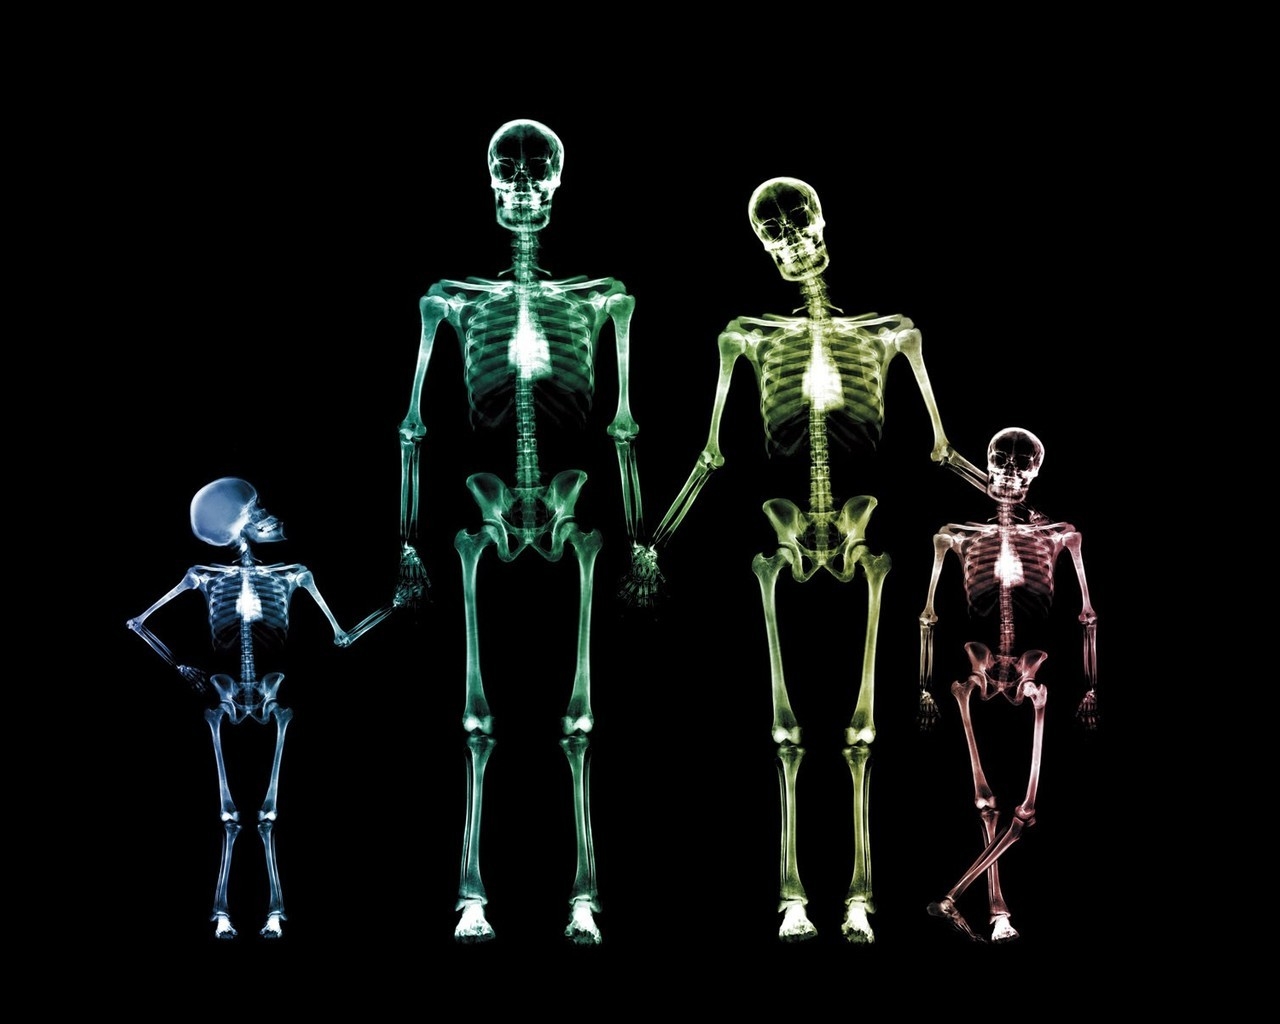 Family Skeletons for 1280 x 1024 resolution